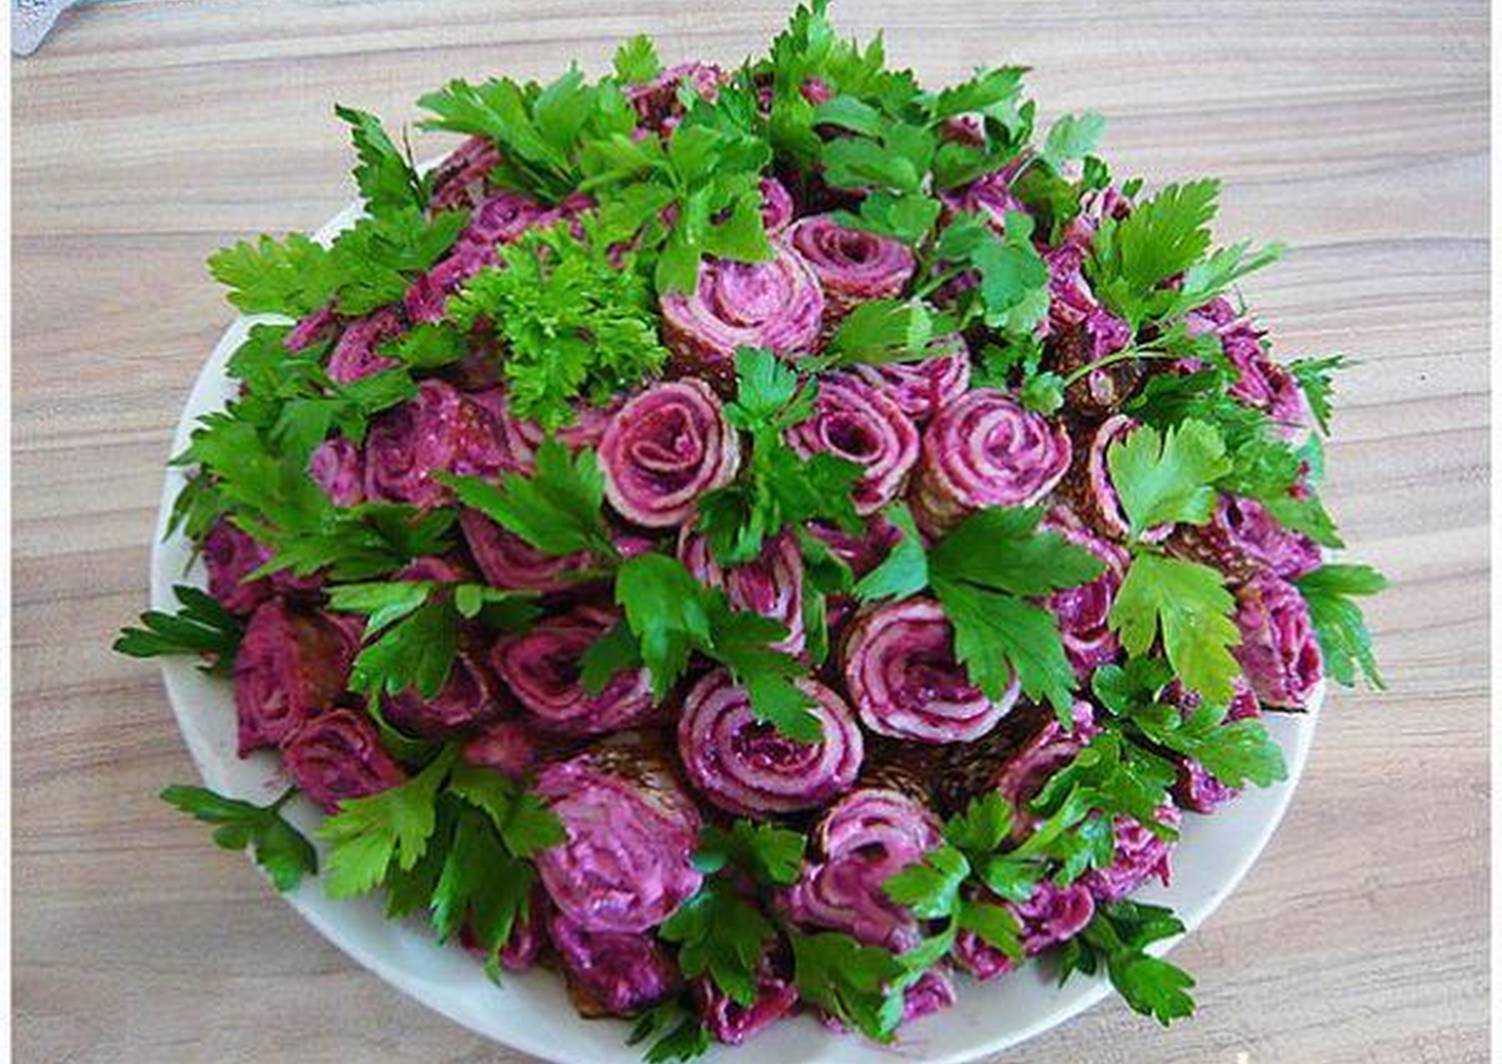 Салат фиалка - восхитительное украшение на любом праздничном столе: рецепт с фото и видео